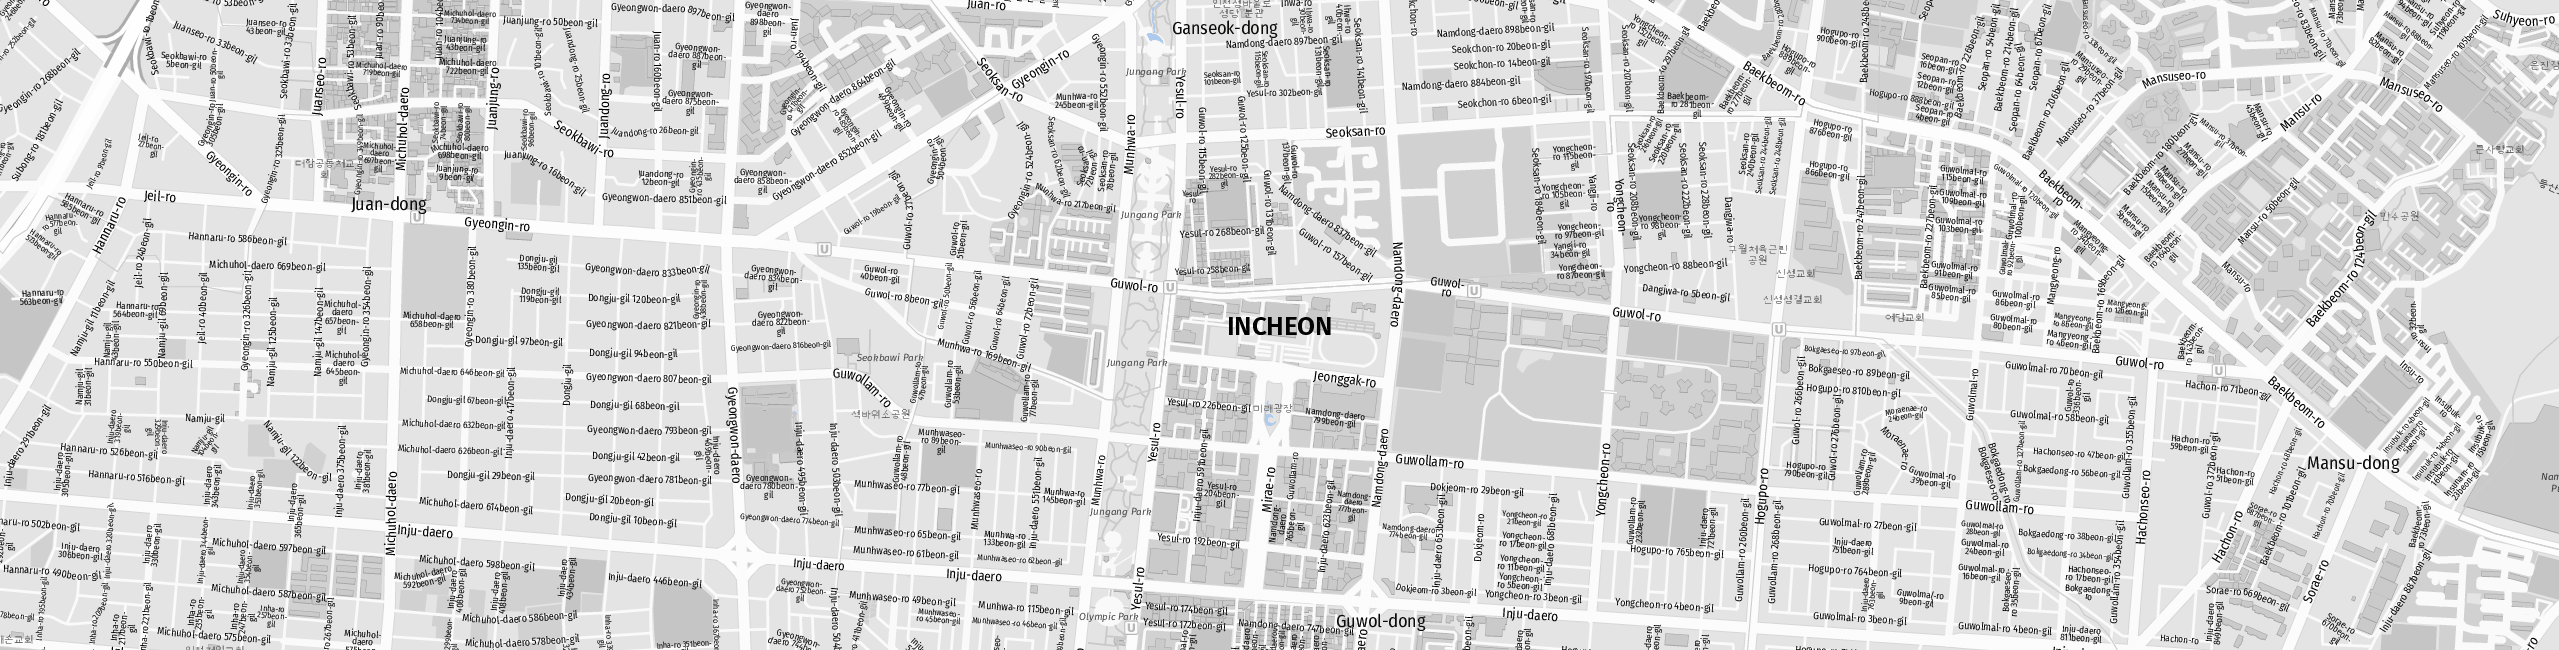 Stadtplan Incheon zum Downloaden.